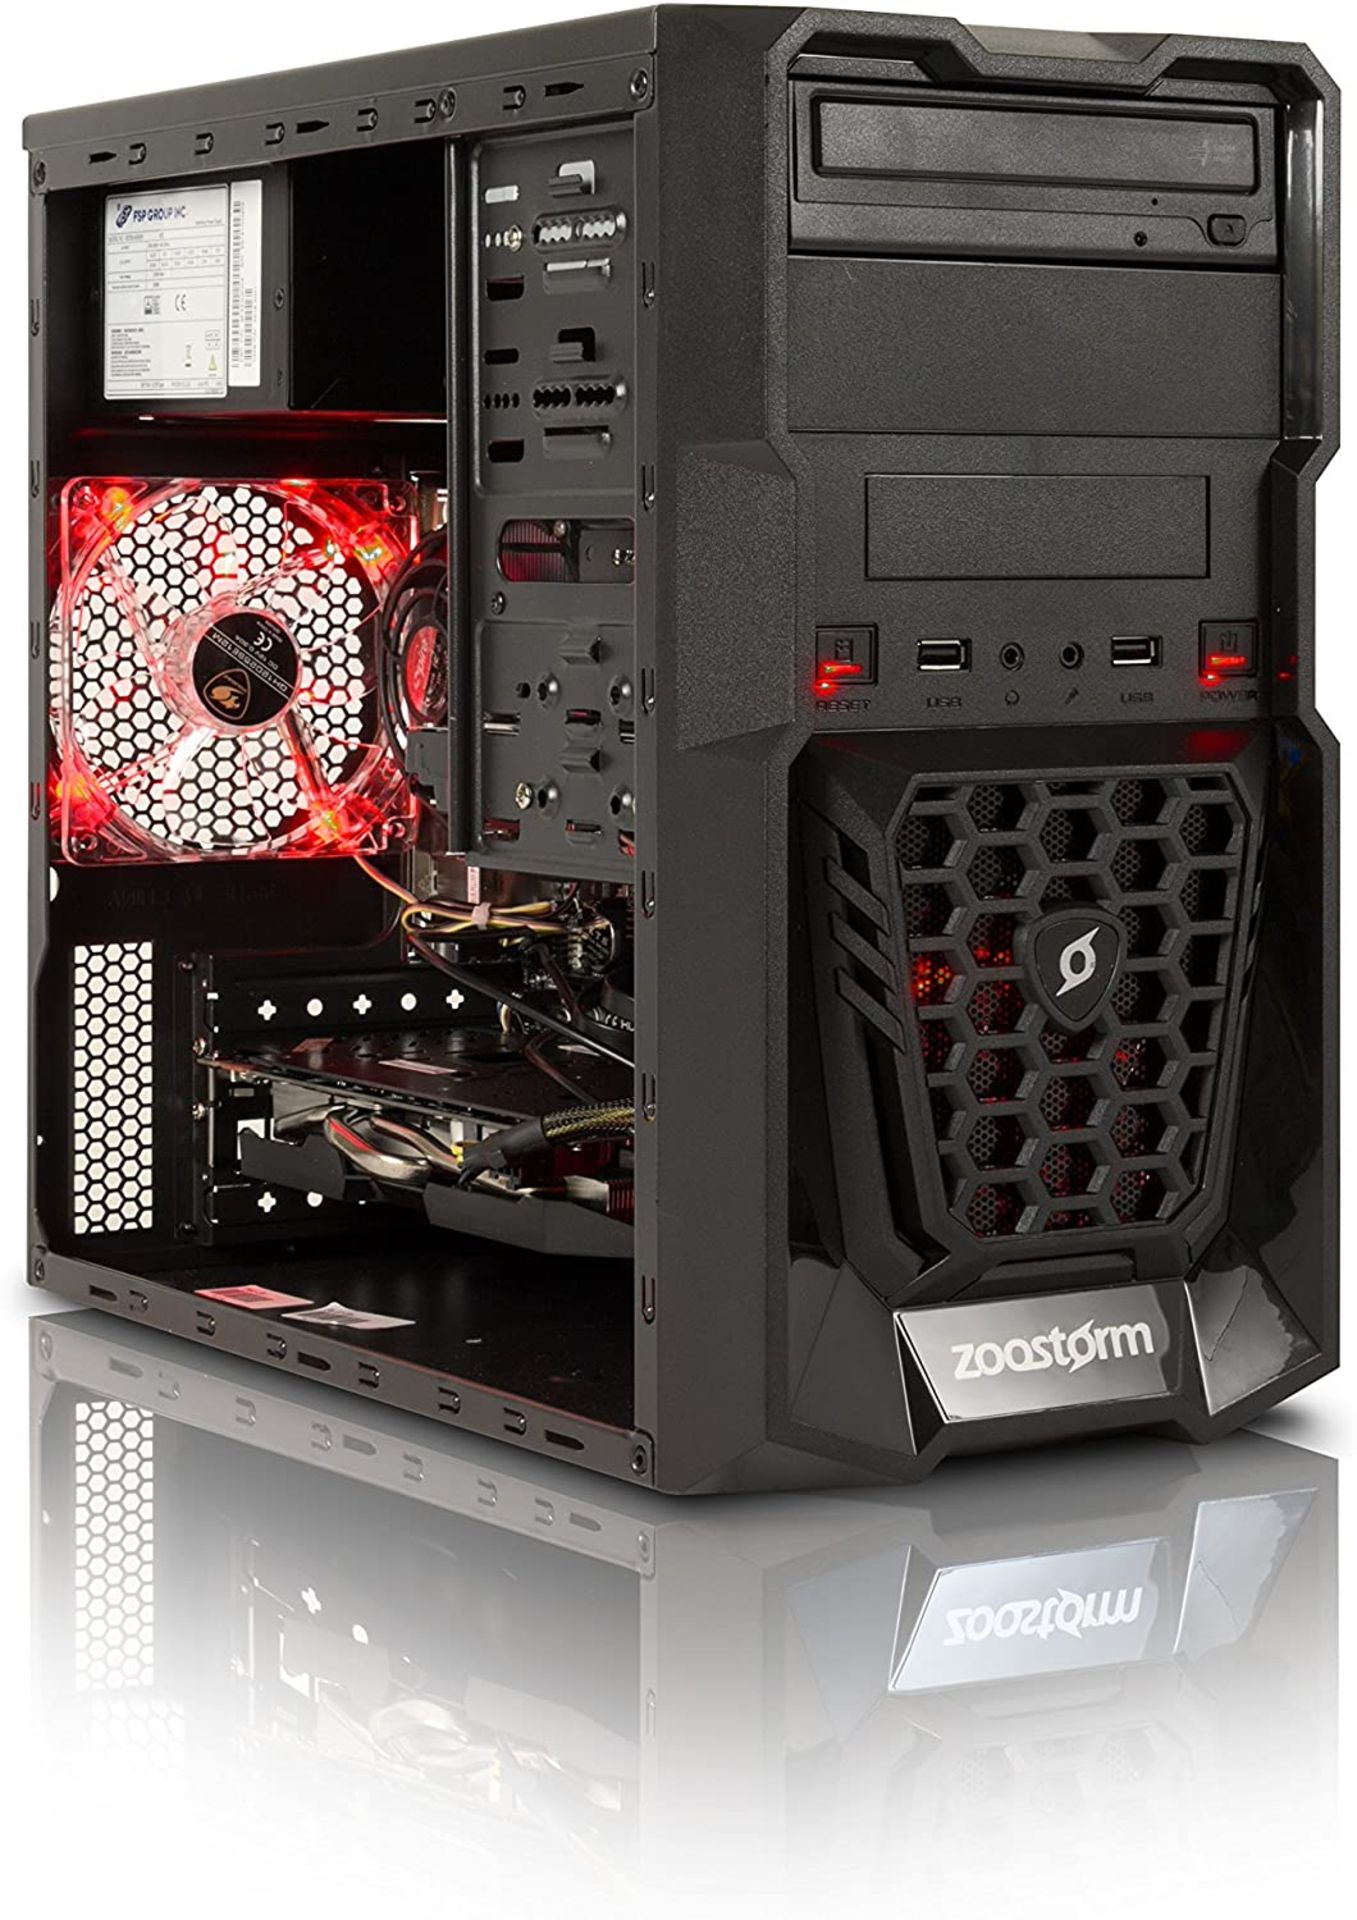 (69) 1 x Grade B - Zoostorm Quest Desktop PC - (Black) (AMD A8 7650K, 8 GB RAM, 1 TB HDD, Radeo... - Image 3 of 5